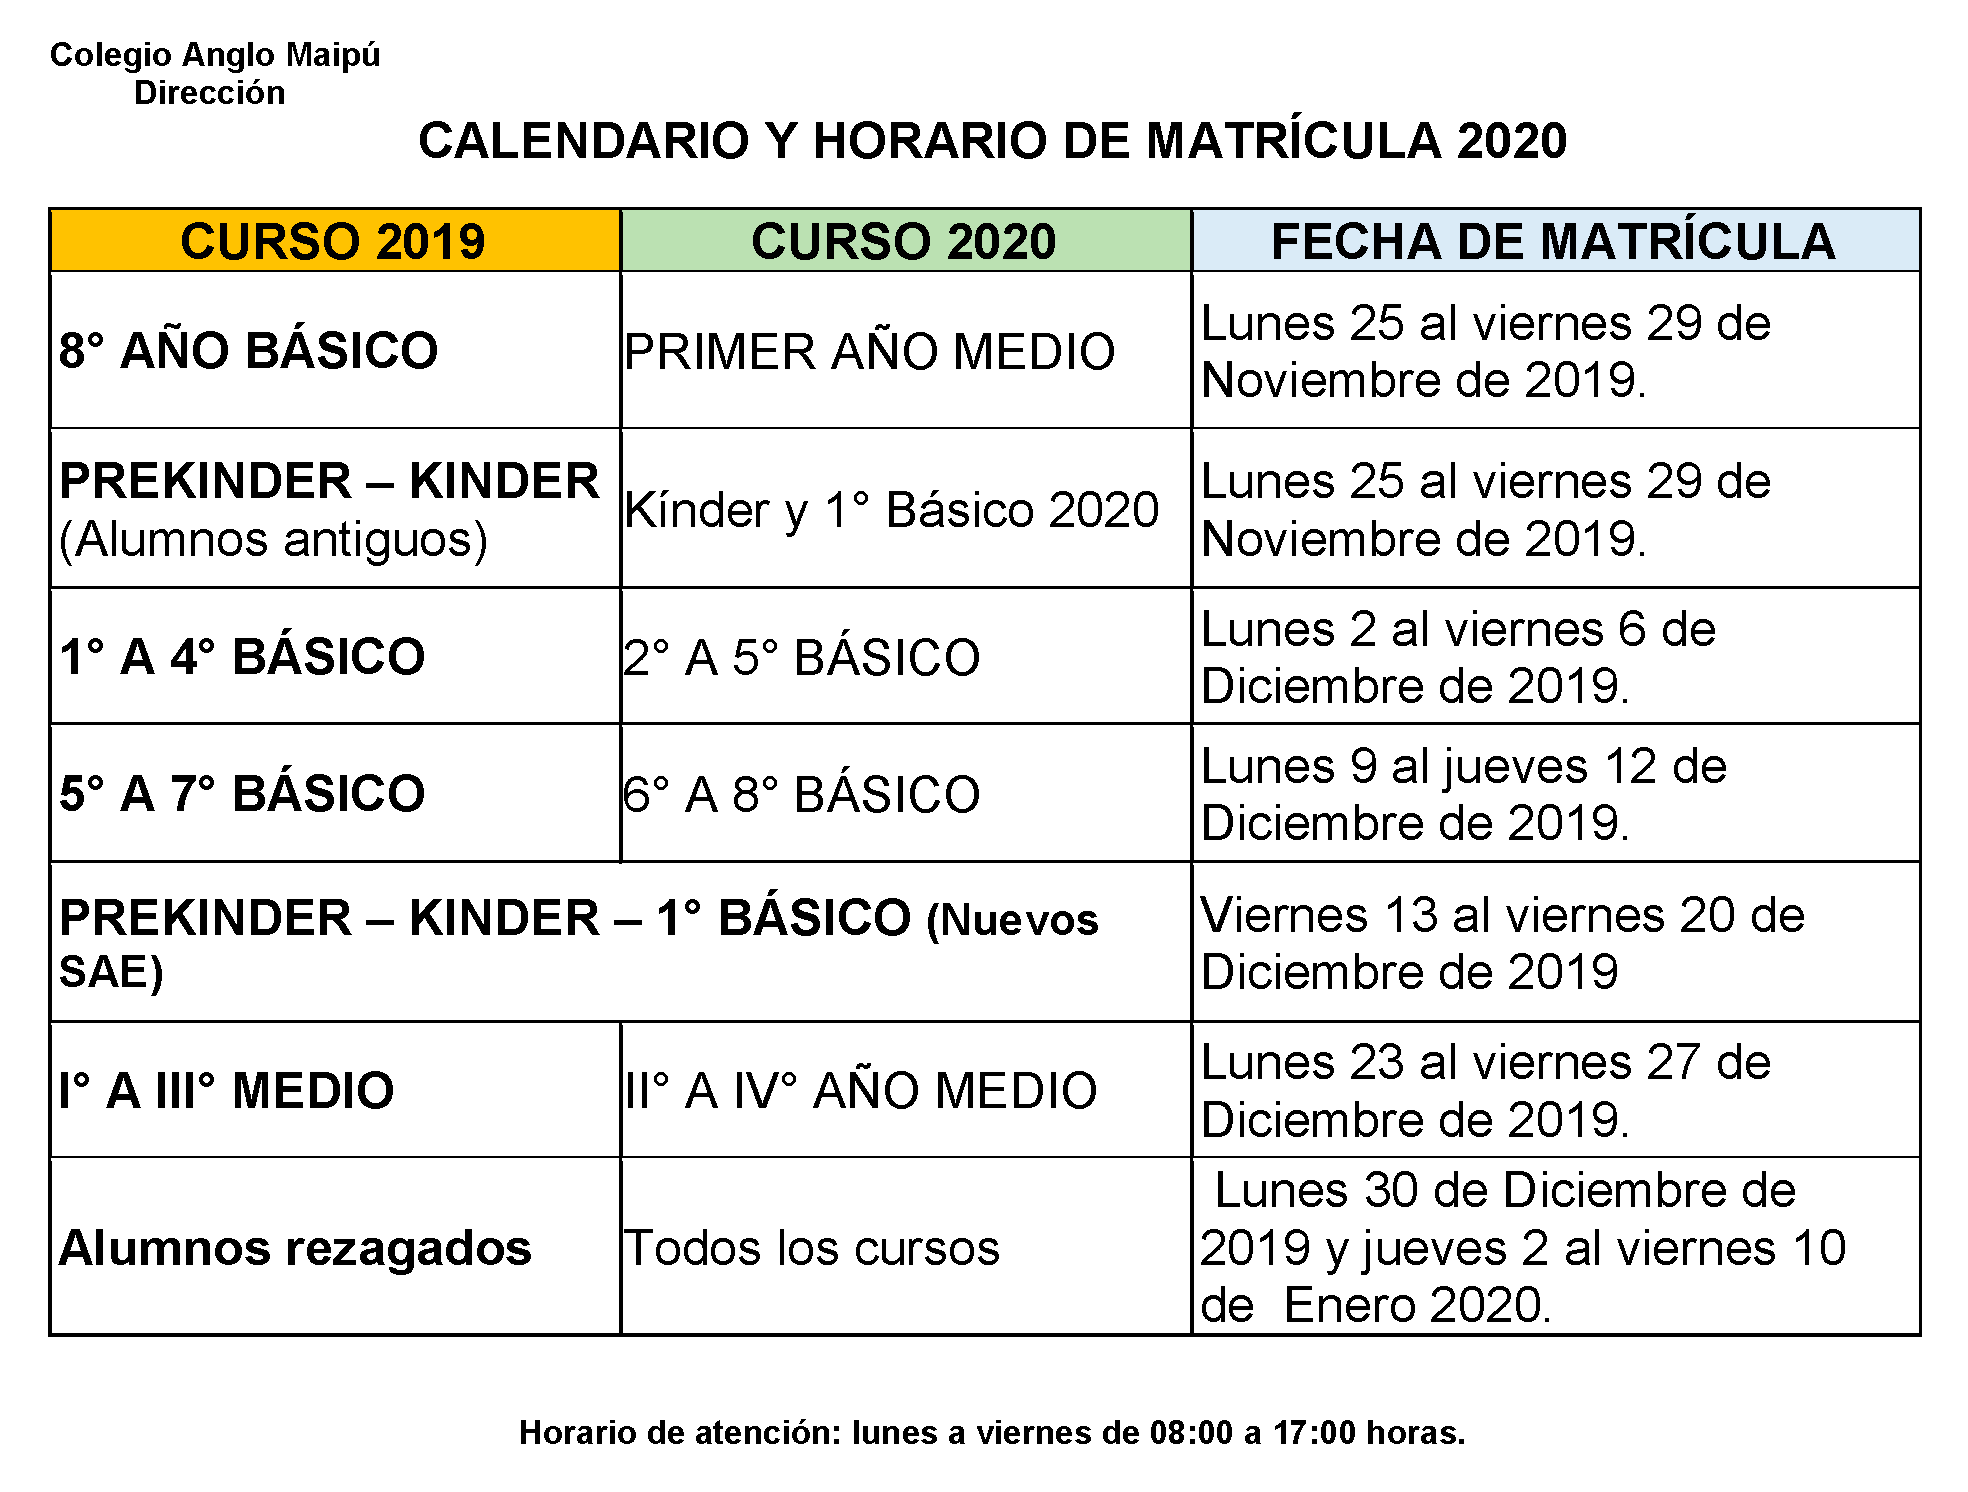 CALENDARIO Y HORARIO DE MATRÍCULA 2020